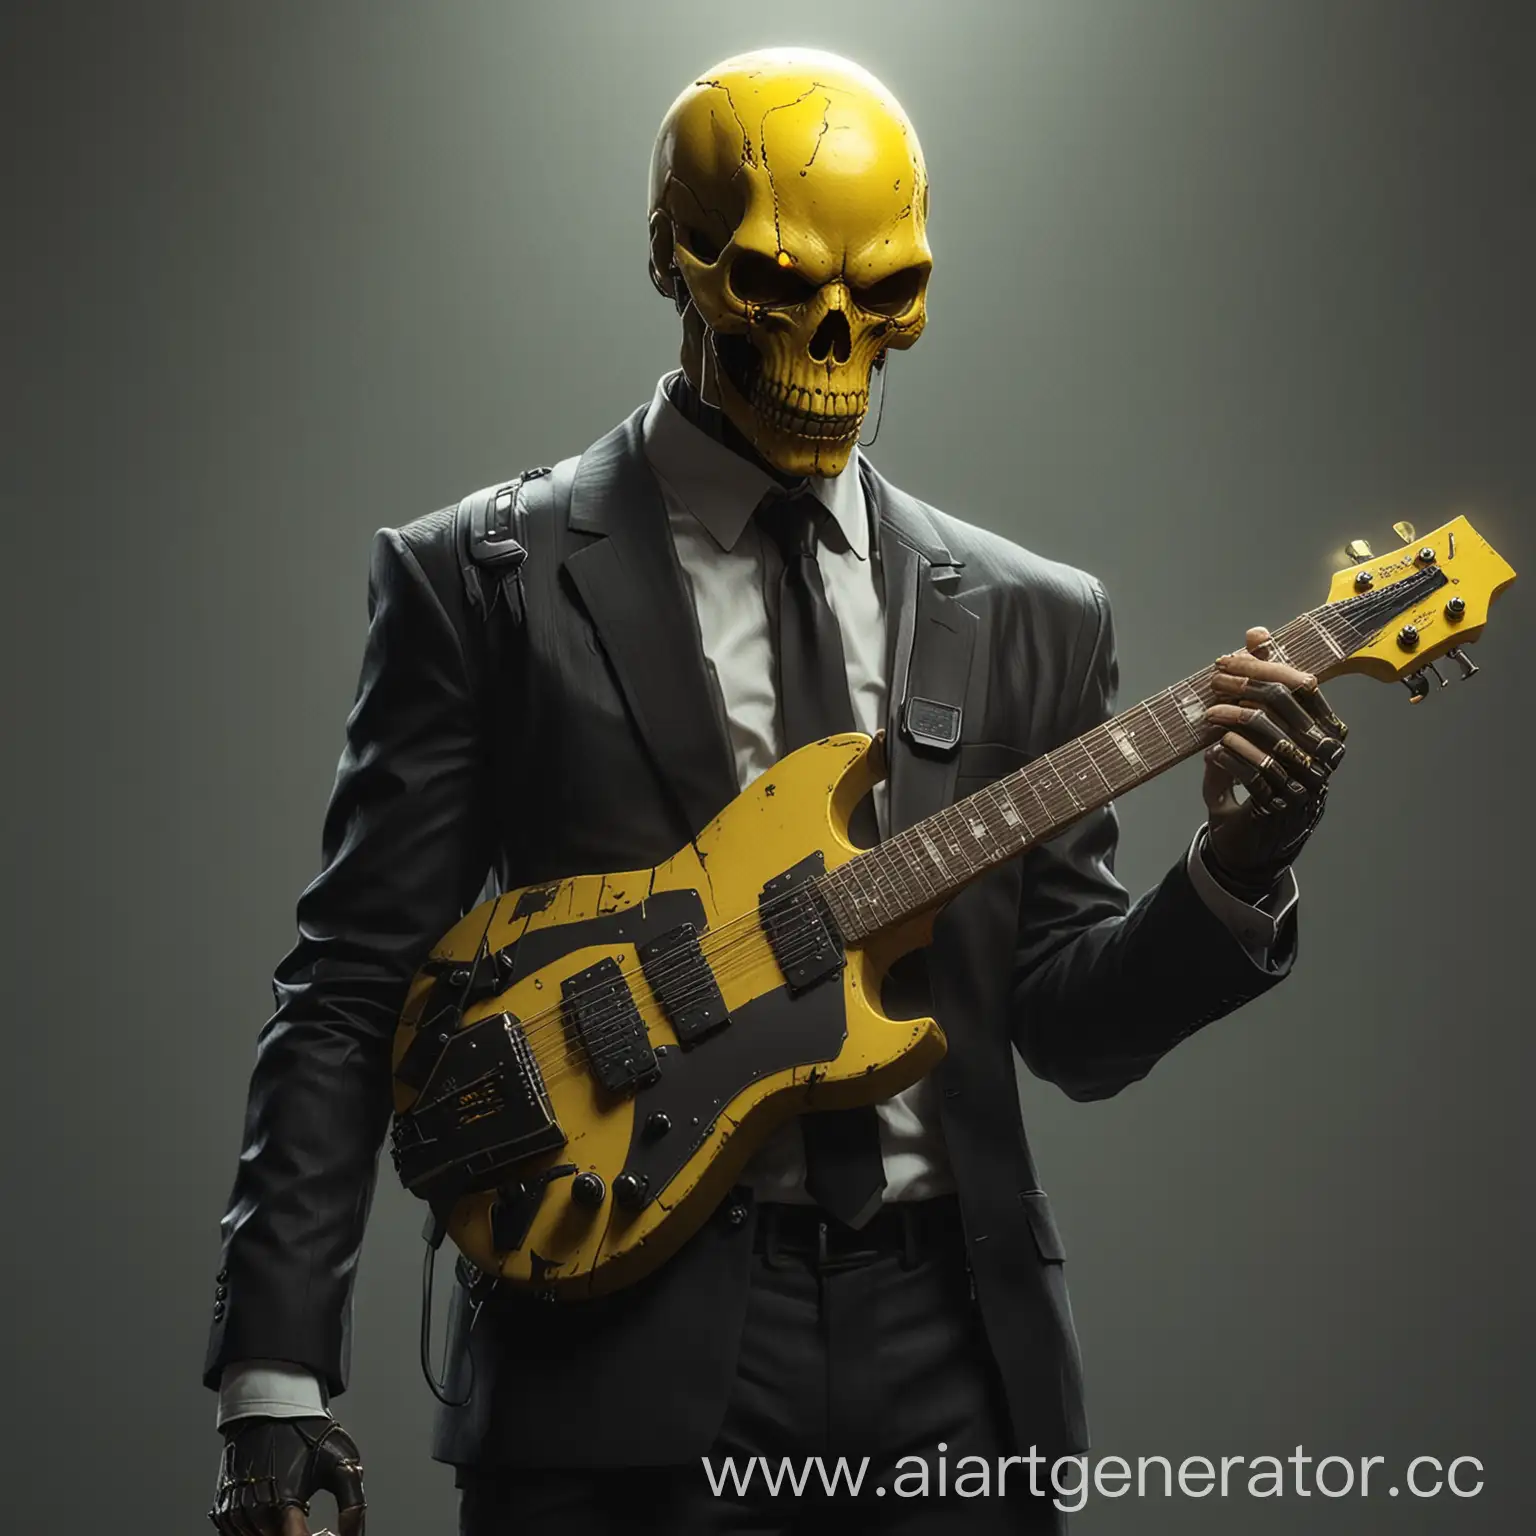 Человек с имплантом жёлтого черепа вместо головы в чёрном деловом костюме с жёлтым галсутоком. Он держит Жёлтую электрогитару. Картинка в стиле cyberpunk 2077